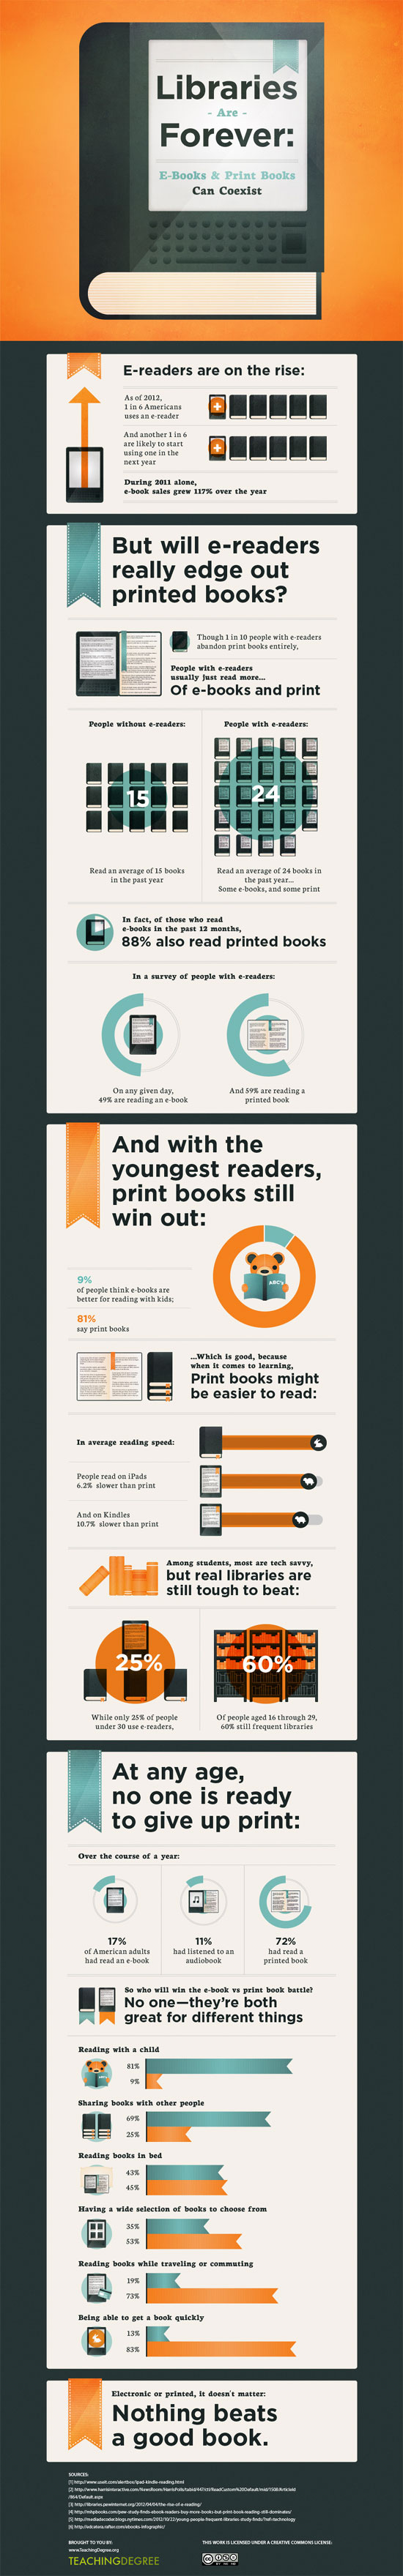 Print vs. Ebook infographic